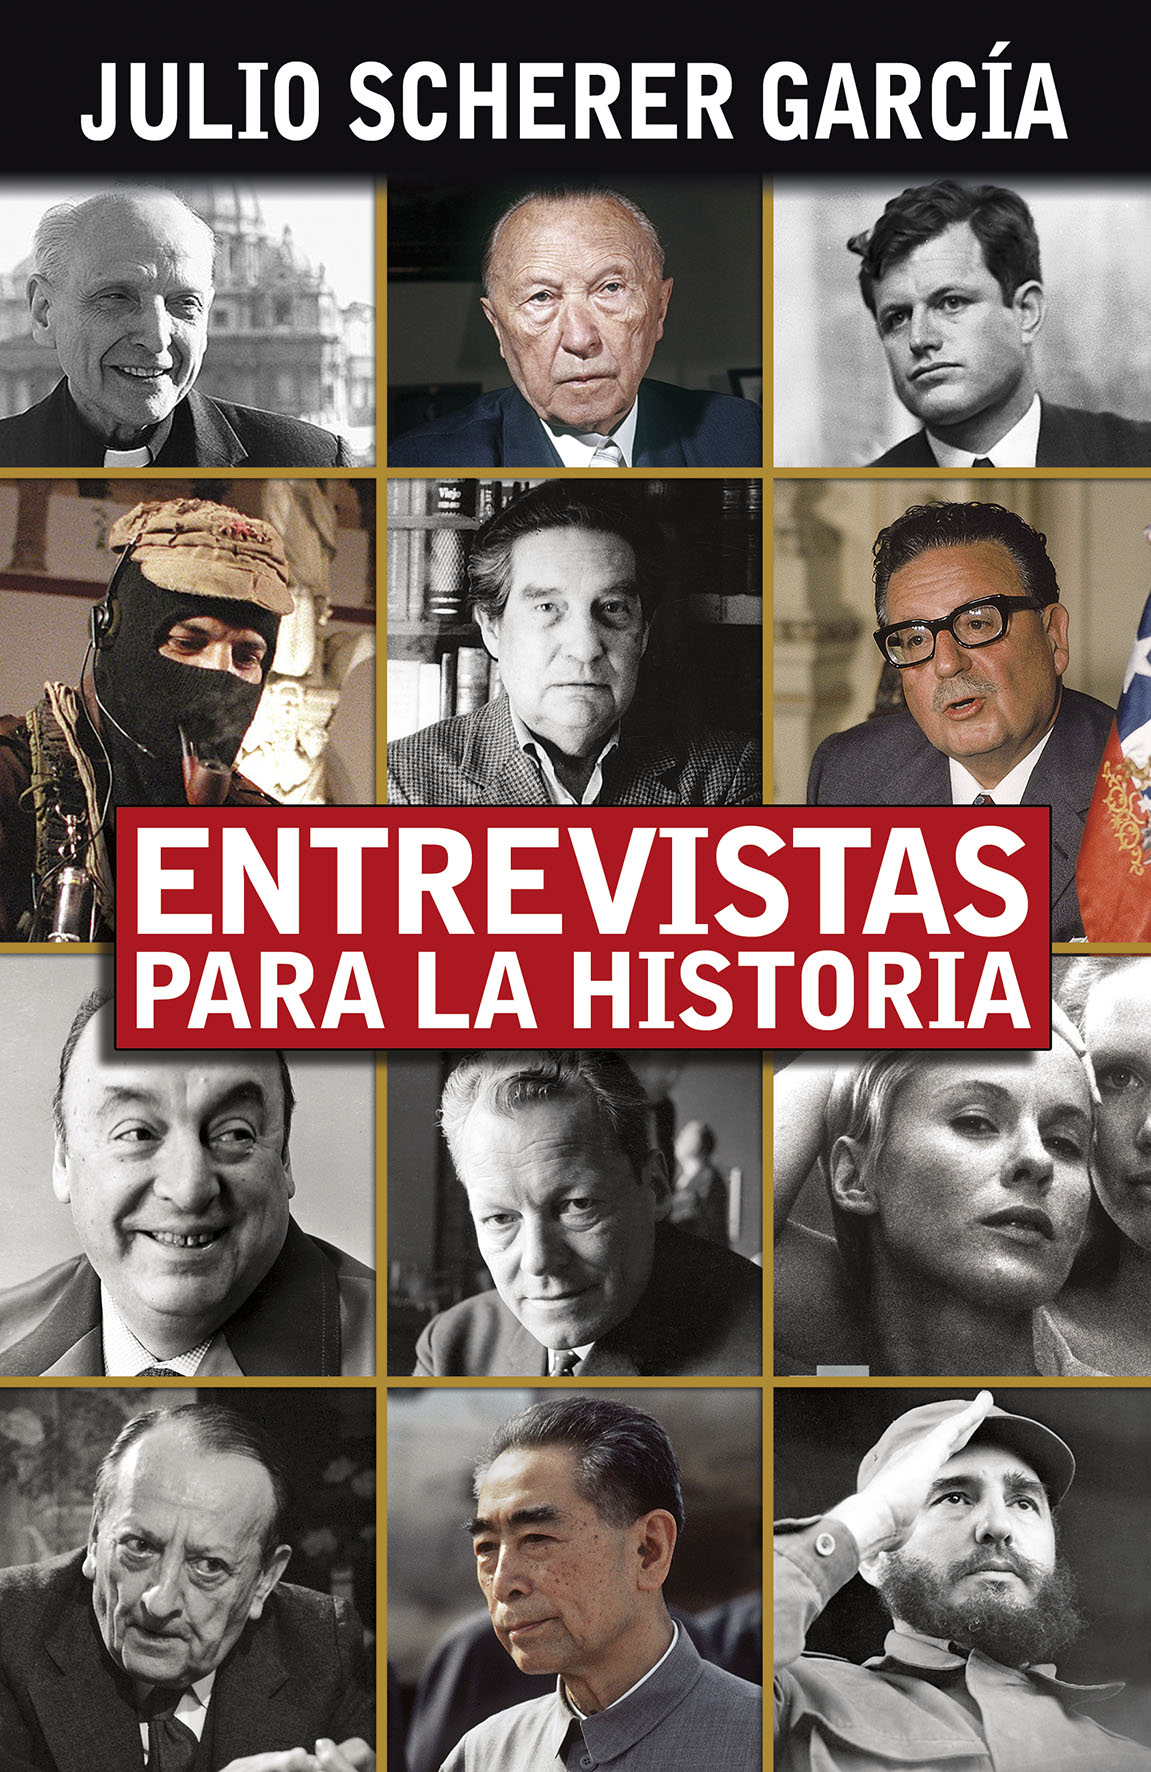 Entrevistas p ara la historia Julio Scherer García Editor responsable - photo 1